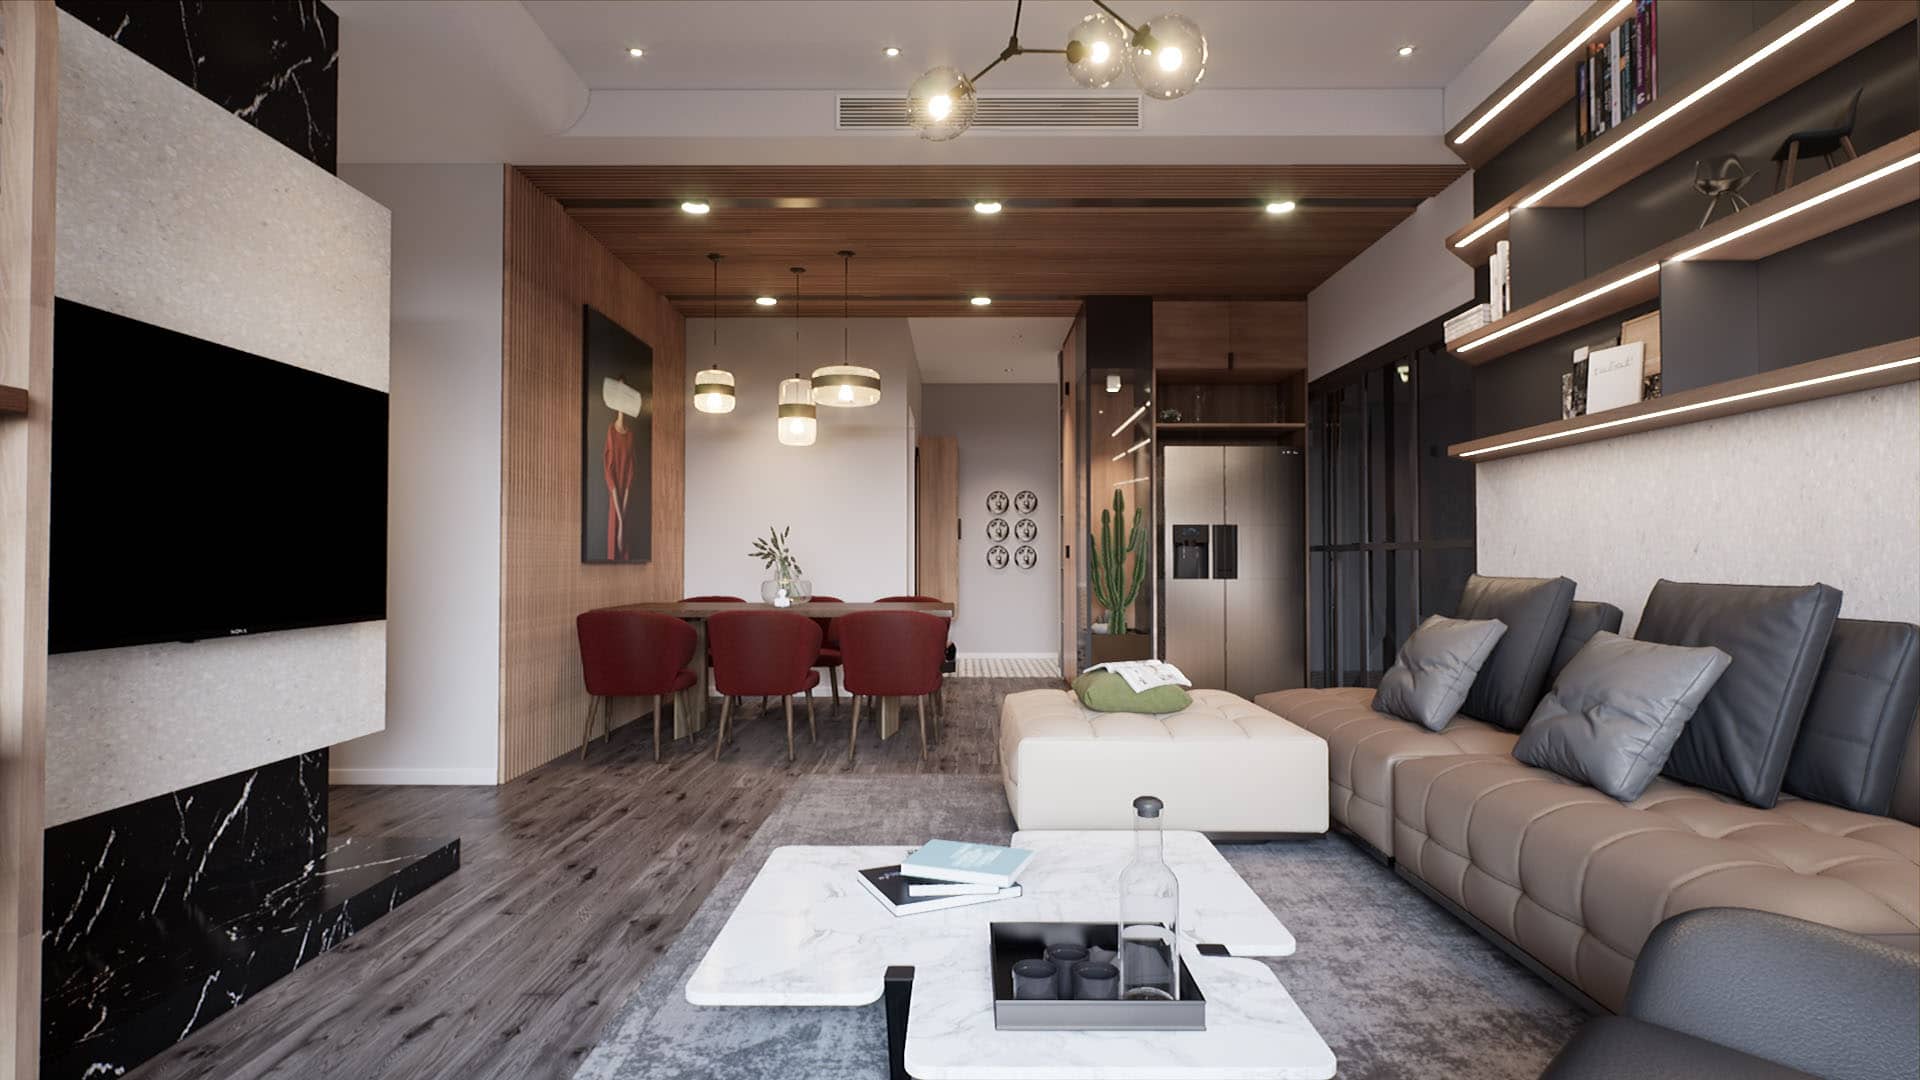 Livingroom Interior in Unreal Engine. Ronen Bekerman 3D